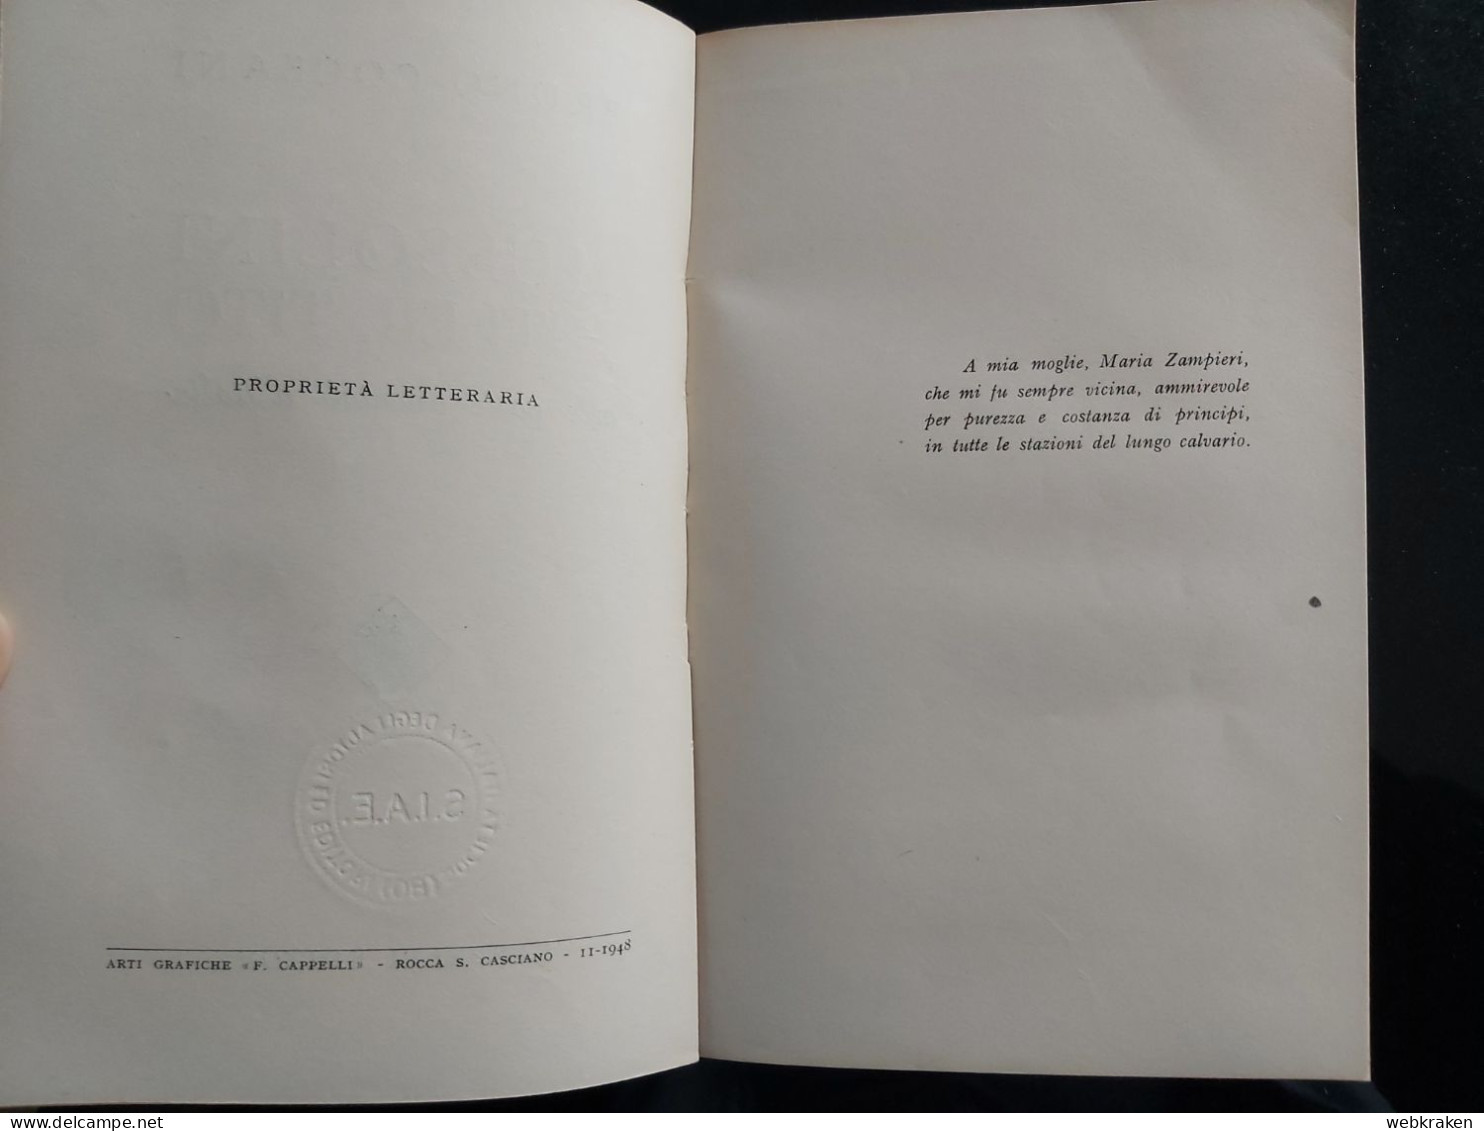 LIBRO BRUNO COCEANI MUSSOLINI HITLER E TITO CAPPELLI TRIESTE 1948 - Libri Antichi